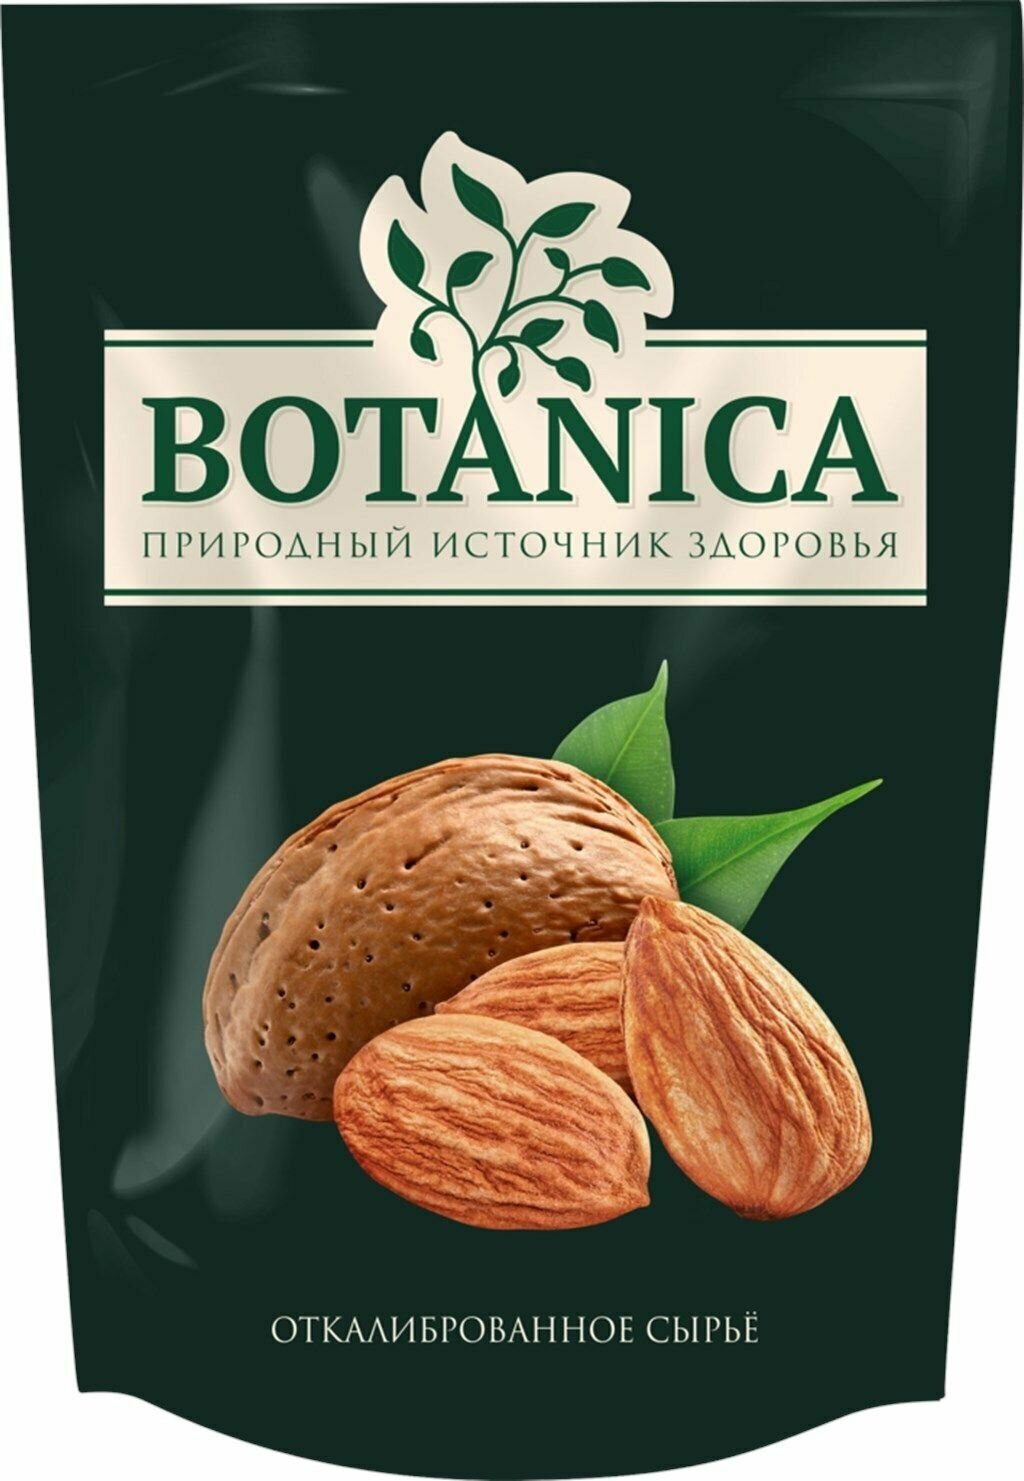 Миндаль BOTANICA очищенный сырой, 140 г - 2 шт.